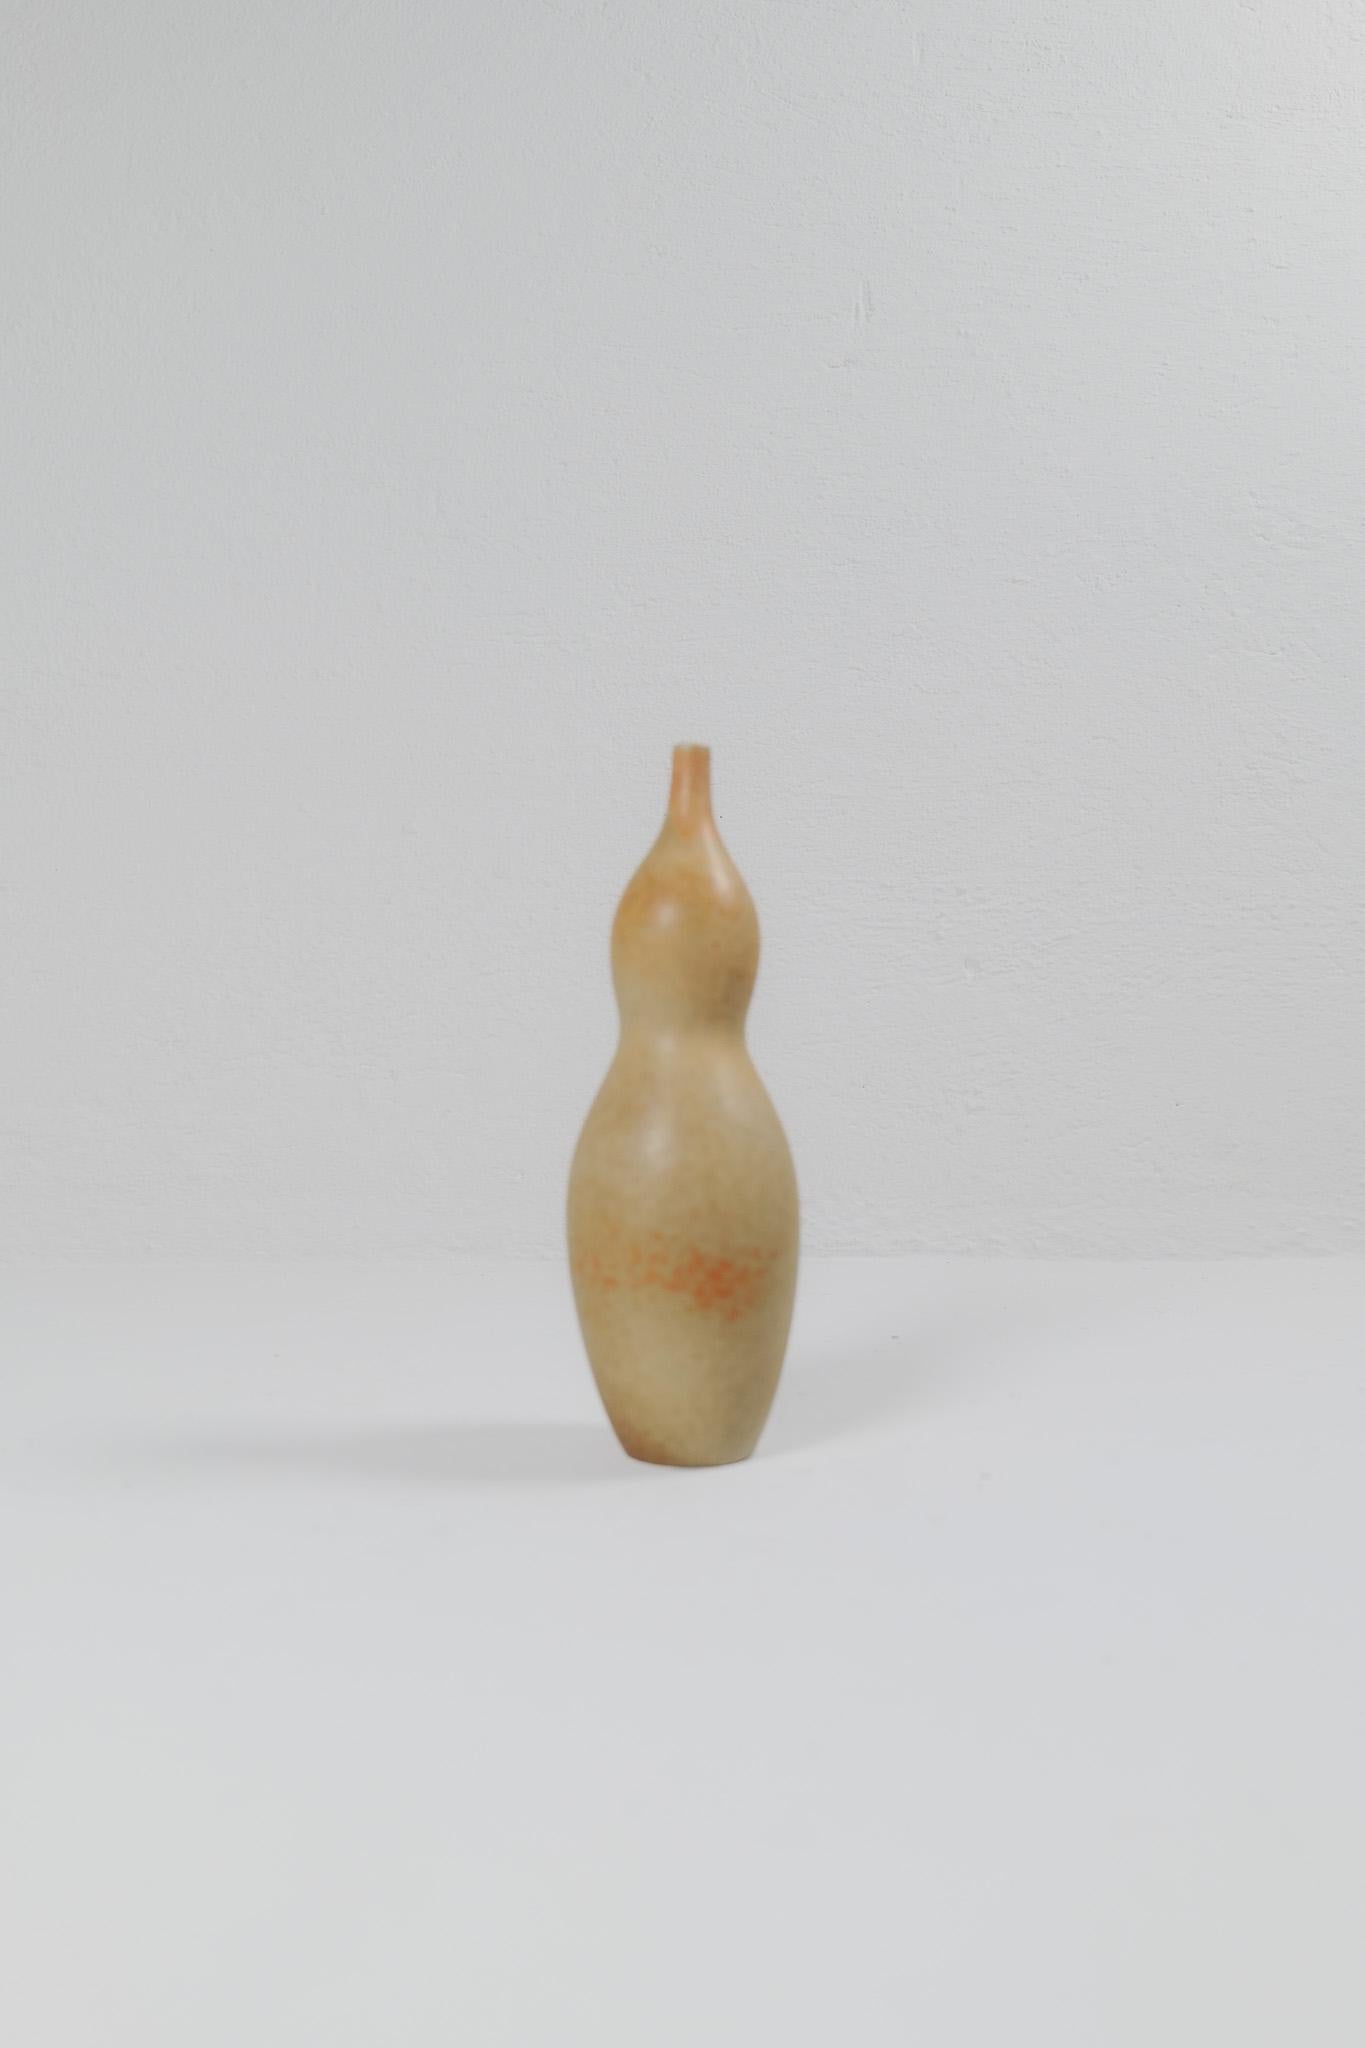 Diese einzigartige Vase gehört zu einer Serie von Vasen, die 1948 unter dem Namen 